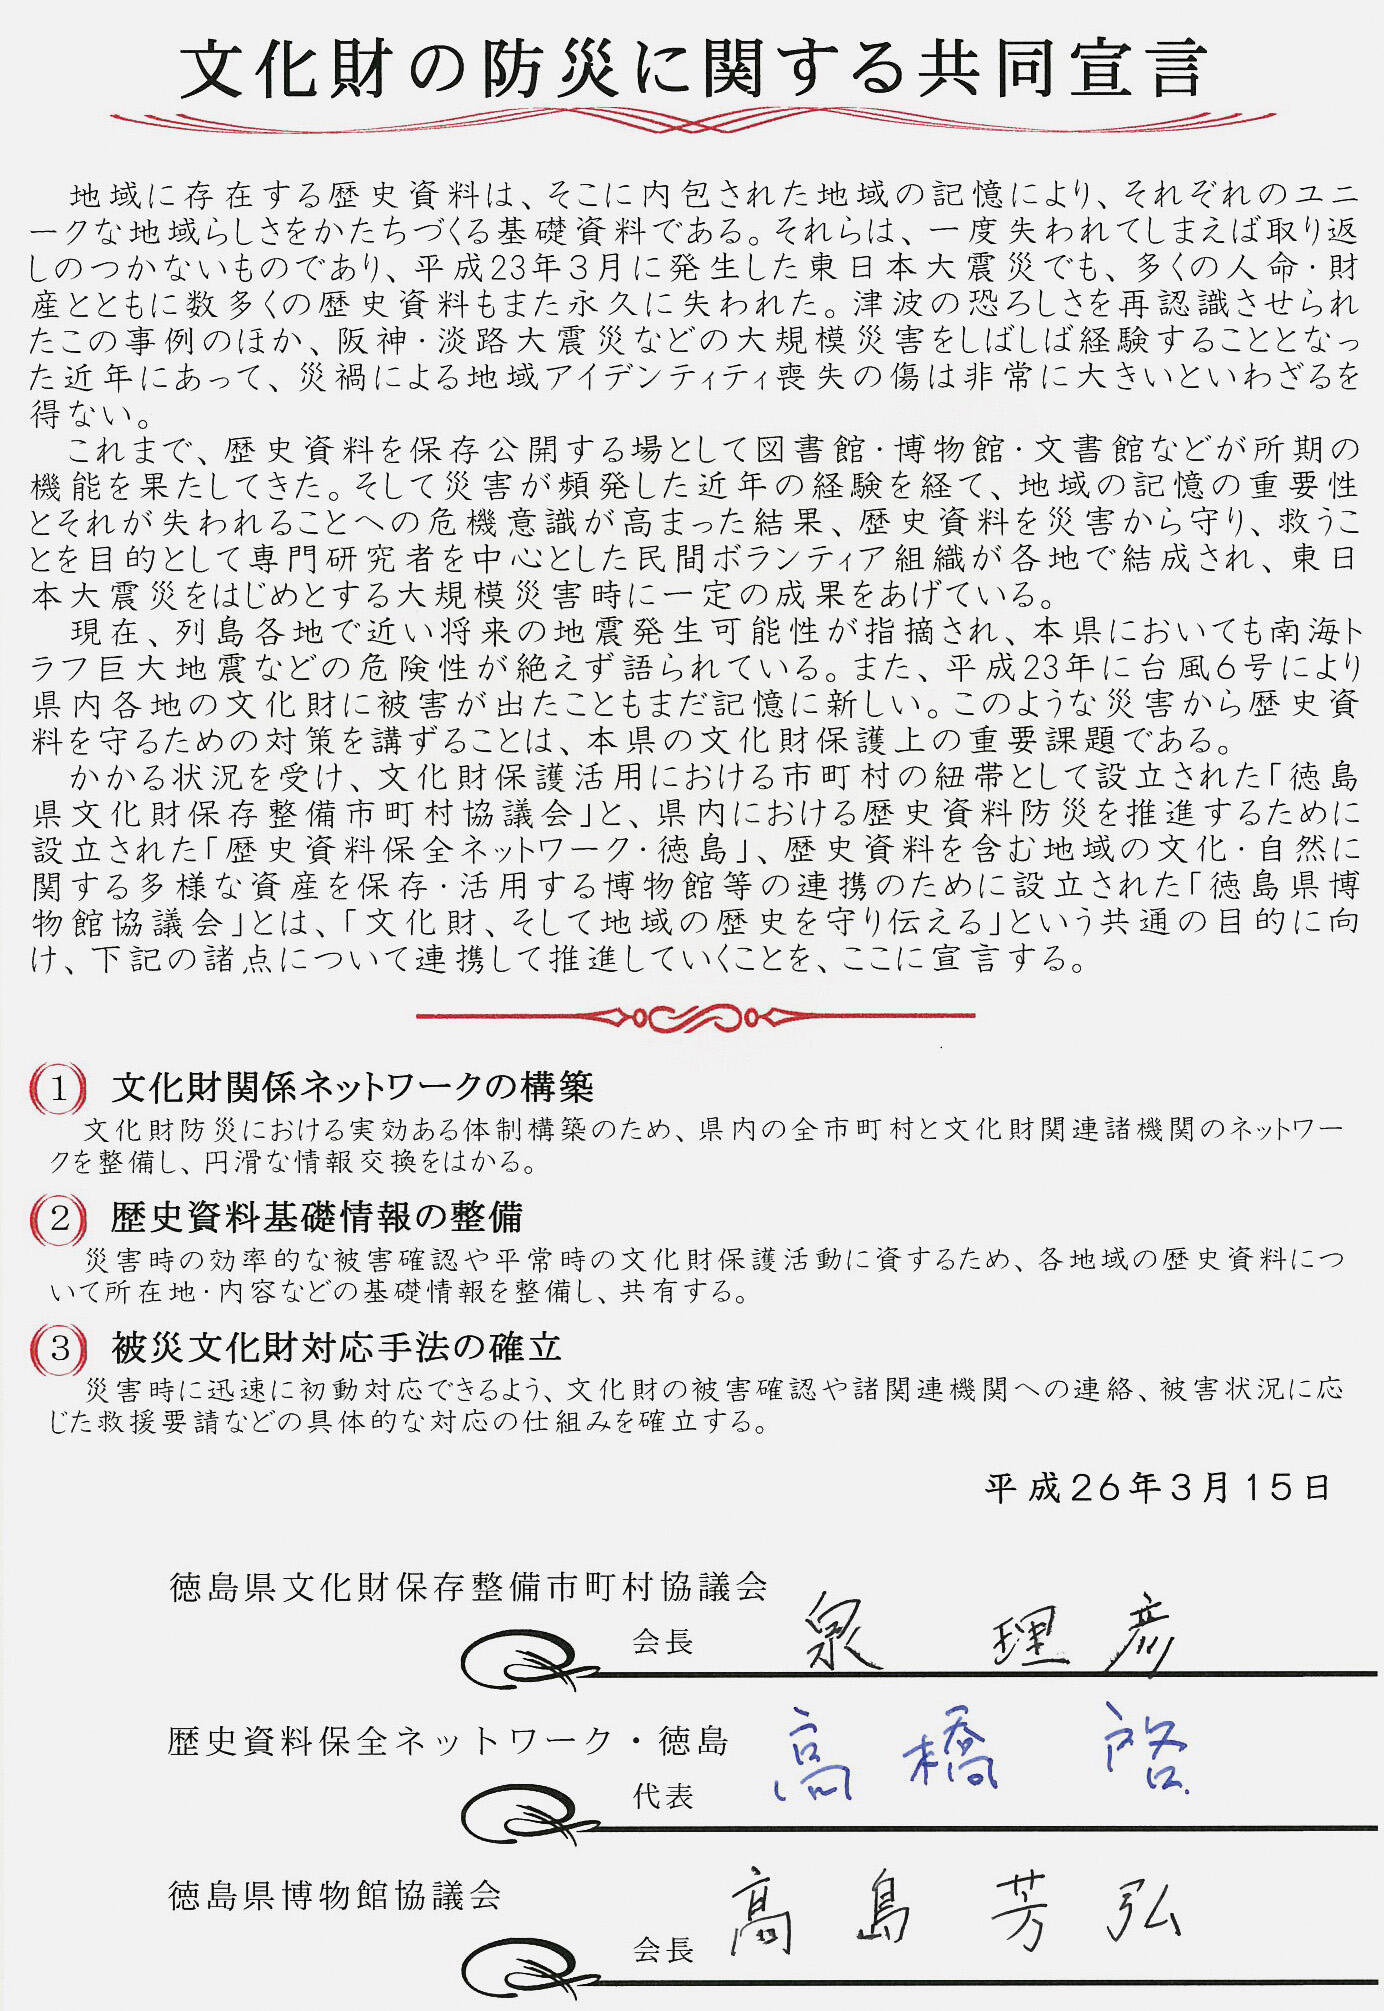 5【活動の特徴】文化財の防災に関する共同宣言.jpg